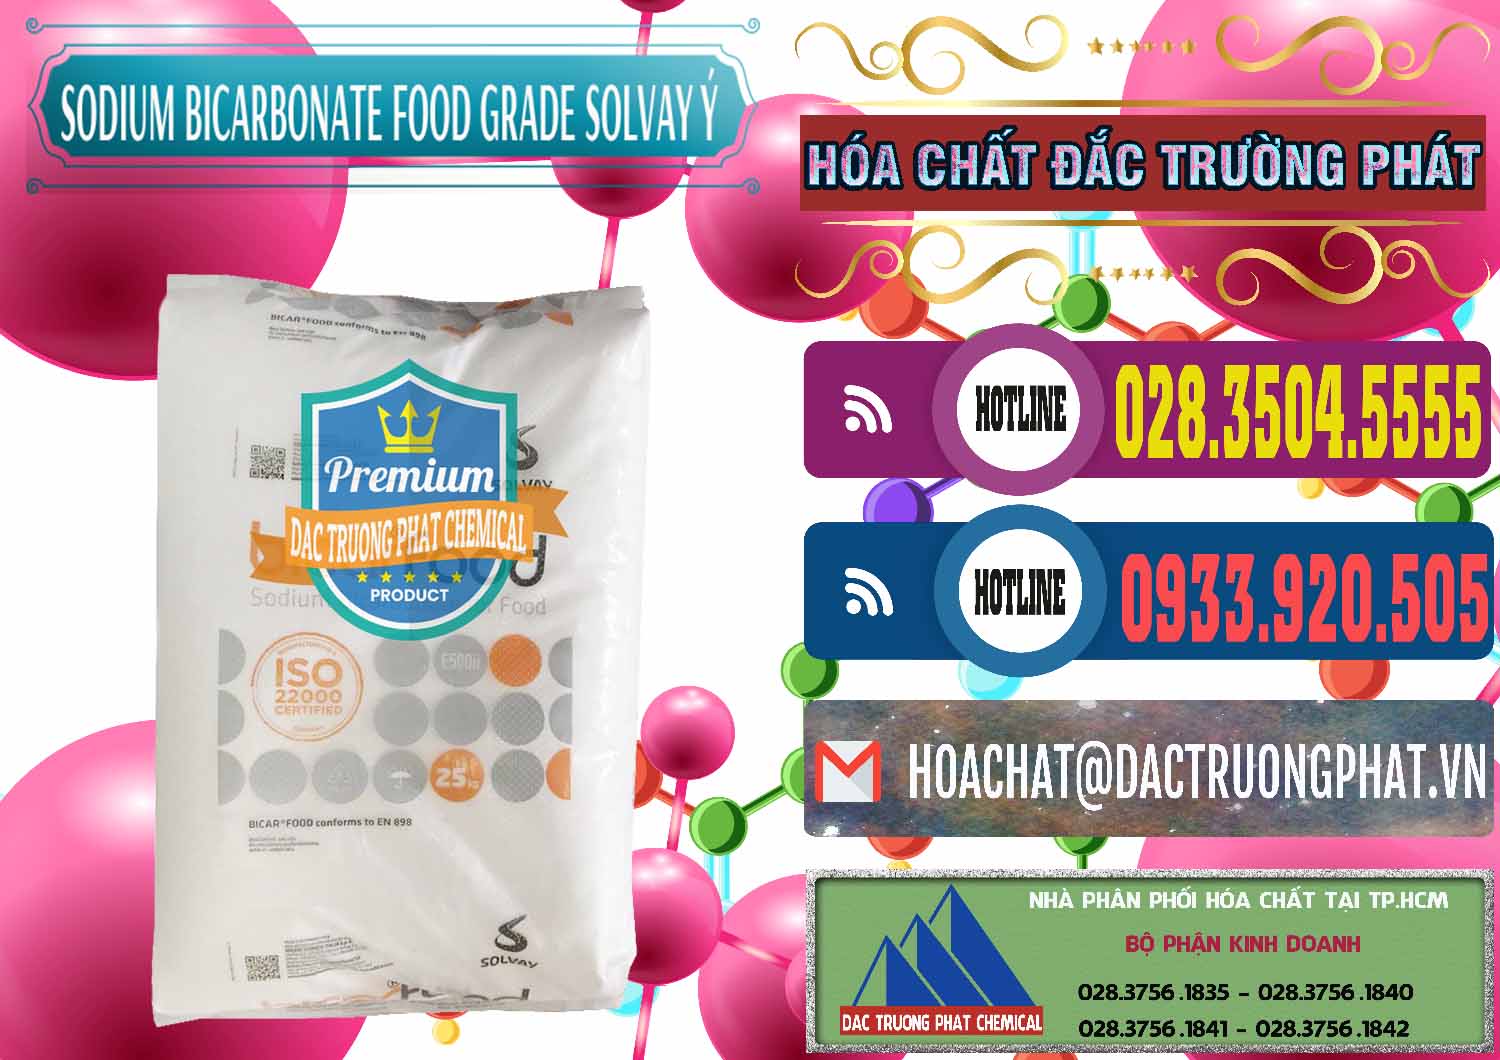 Cty chuyên bán _ cung ứng Sodium Bicarbonate – Bicar NaHCO3 Food Grade Solvay Ý Italy - 0220 - Nơi chuyên cung cấp và bán hóa chất tại TP.HCM - muabanhoachat.com.vn